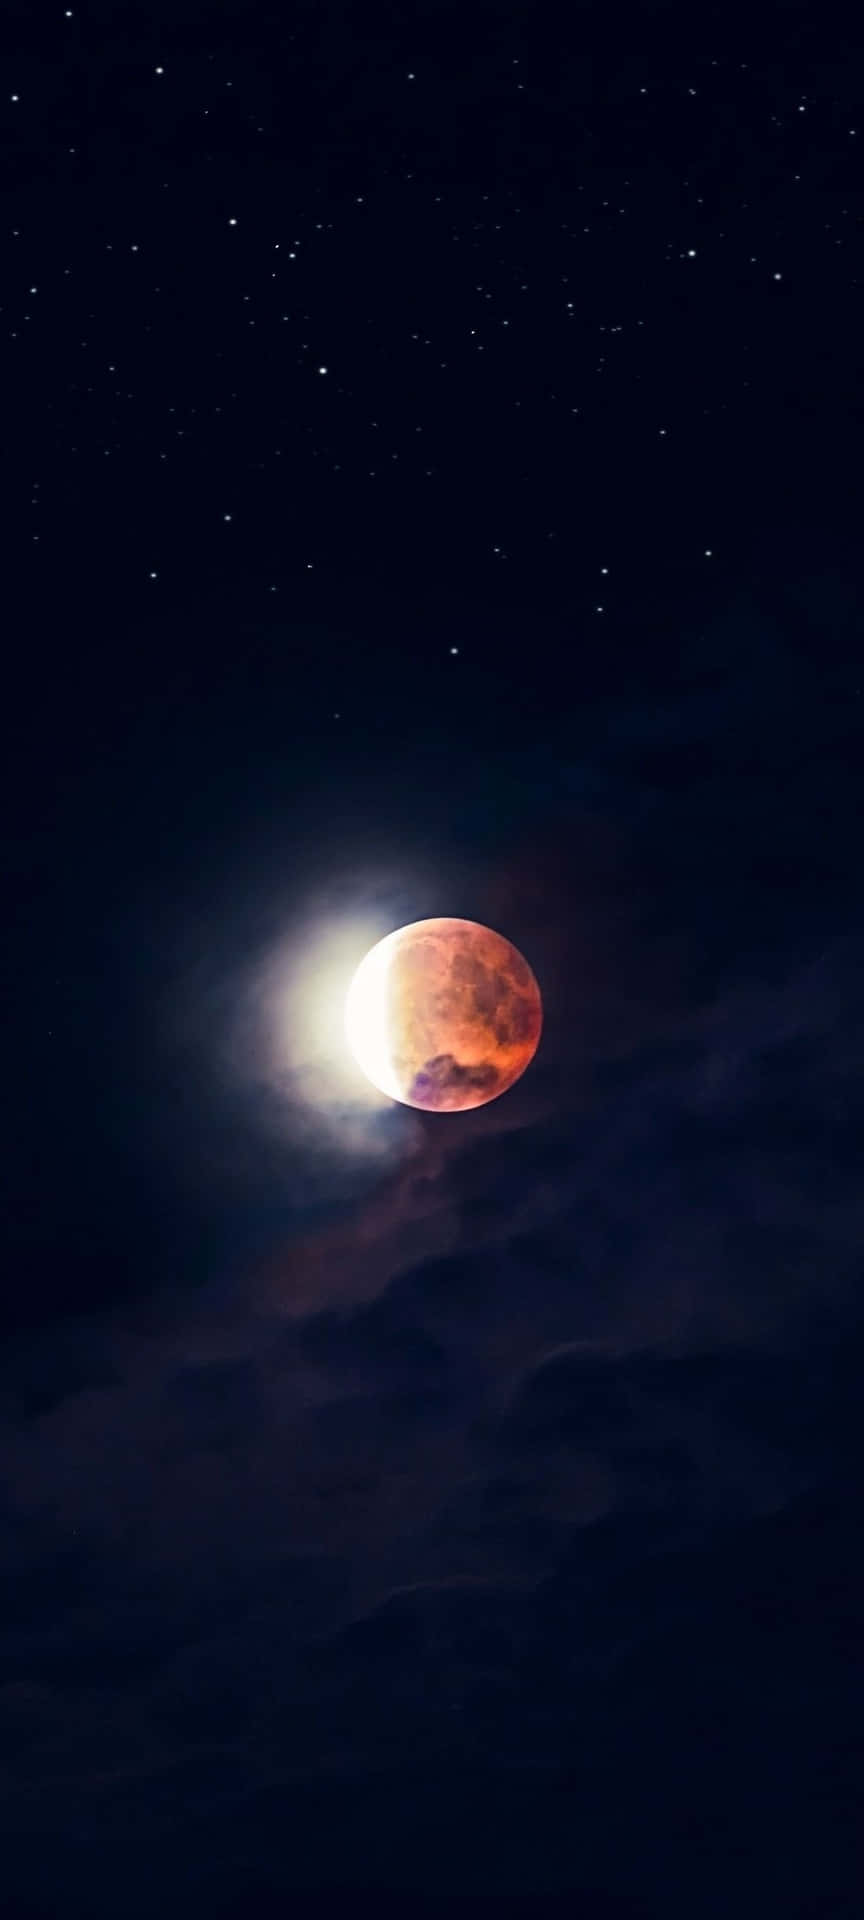 A night under the mesmerising full moon Wallpaper